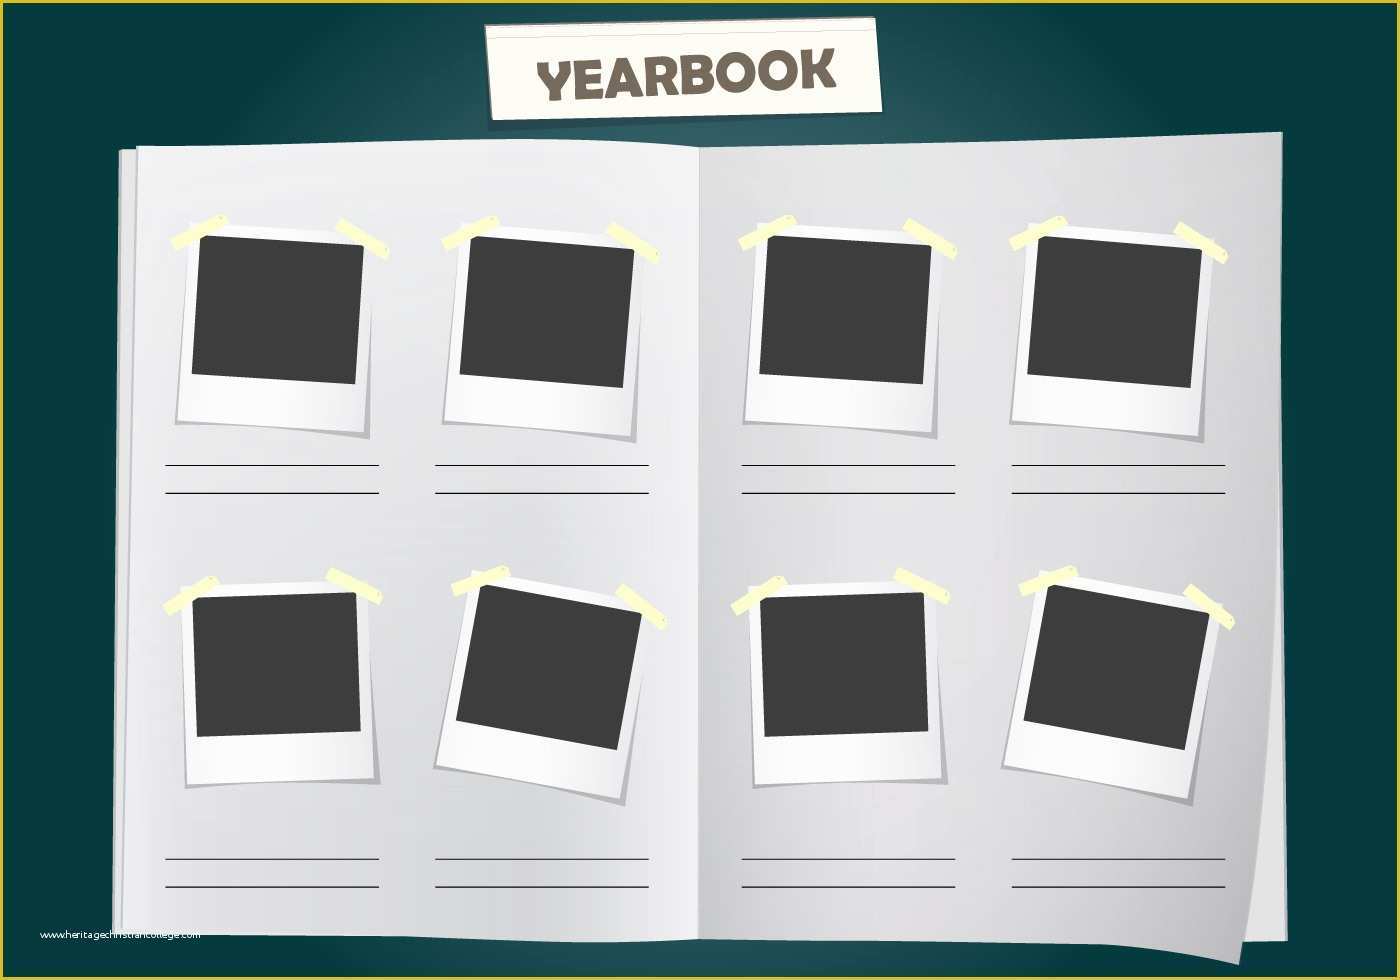 Free Online Yearbook Templates Of Album Yearbook Vector Template Download Free Vector Art